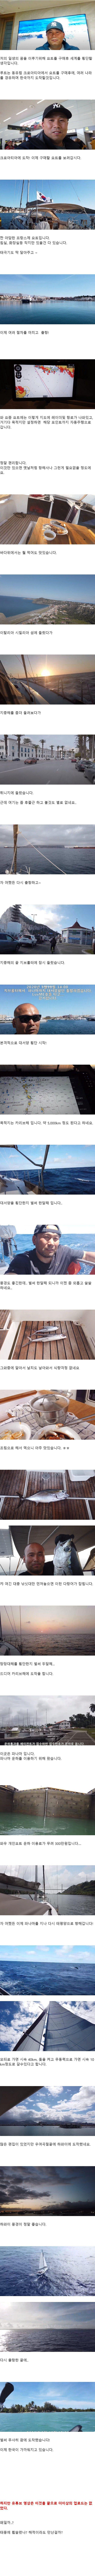 요트로 세계일주하던 낭만있는 한국인 아저씨의 반전 | 인스티즈